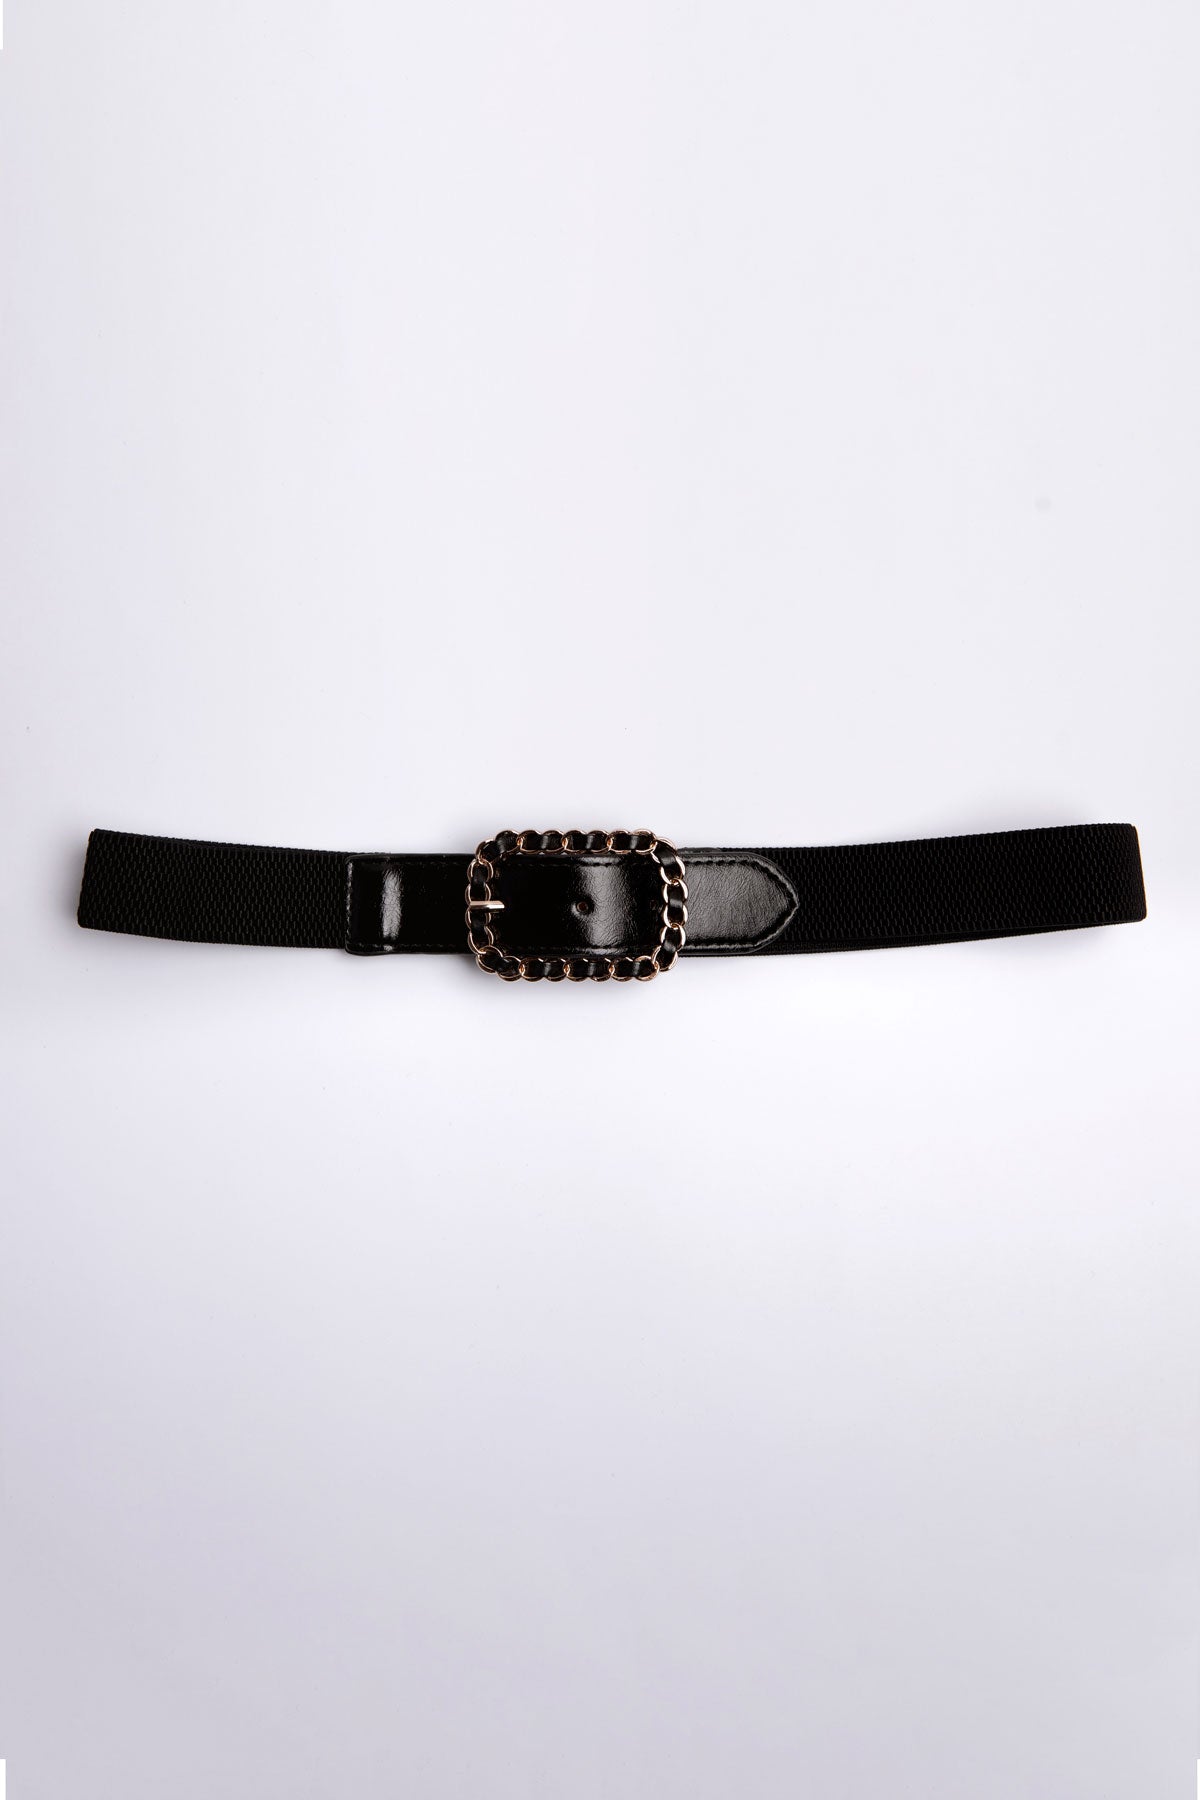 Kika Belt (Black)